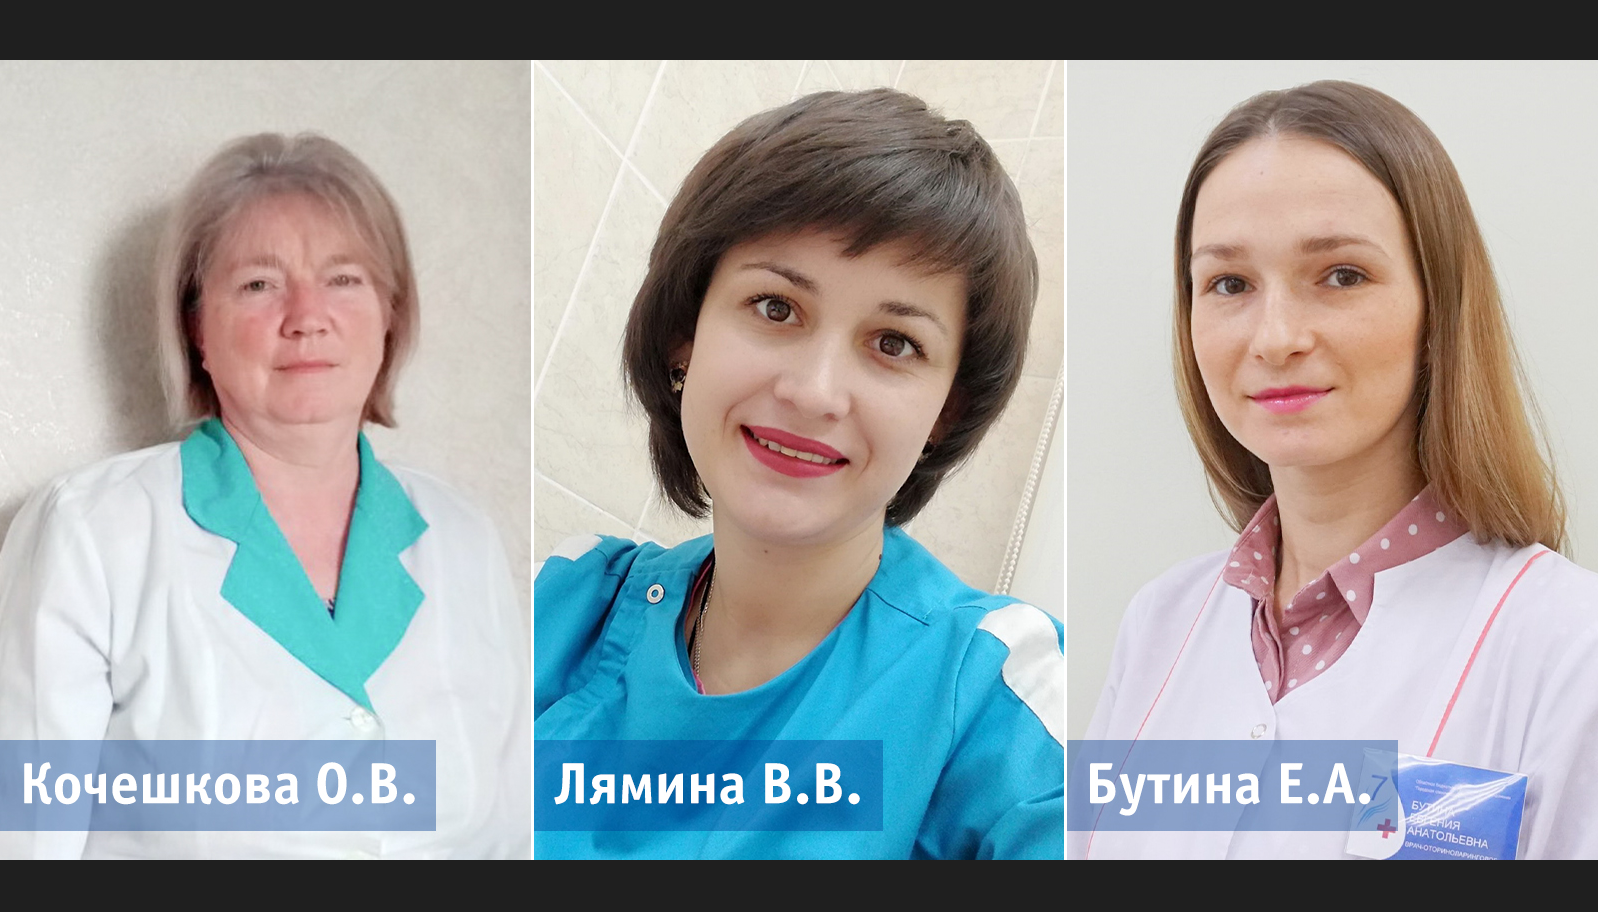 Народными докторами мая в Ивановской области стали Евгения Бутина, Виктория Лямина и Ольга Кочешкова